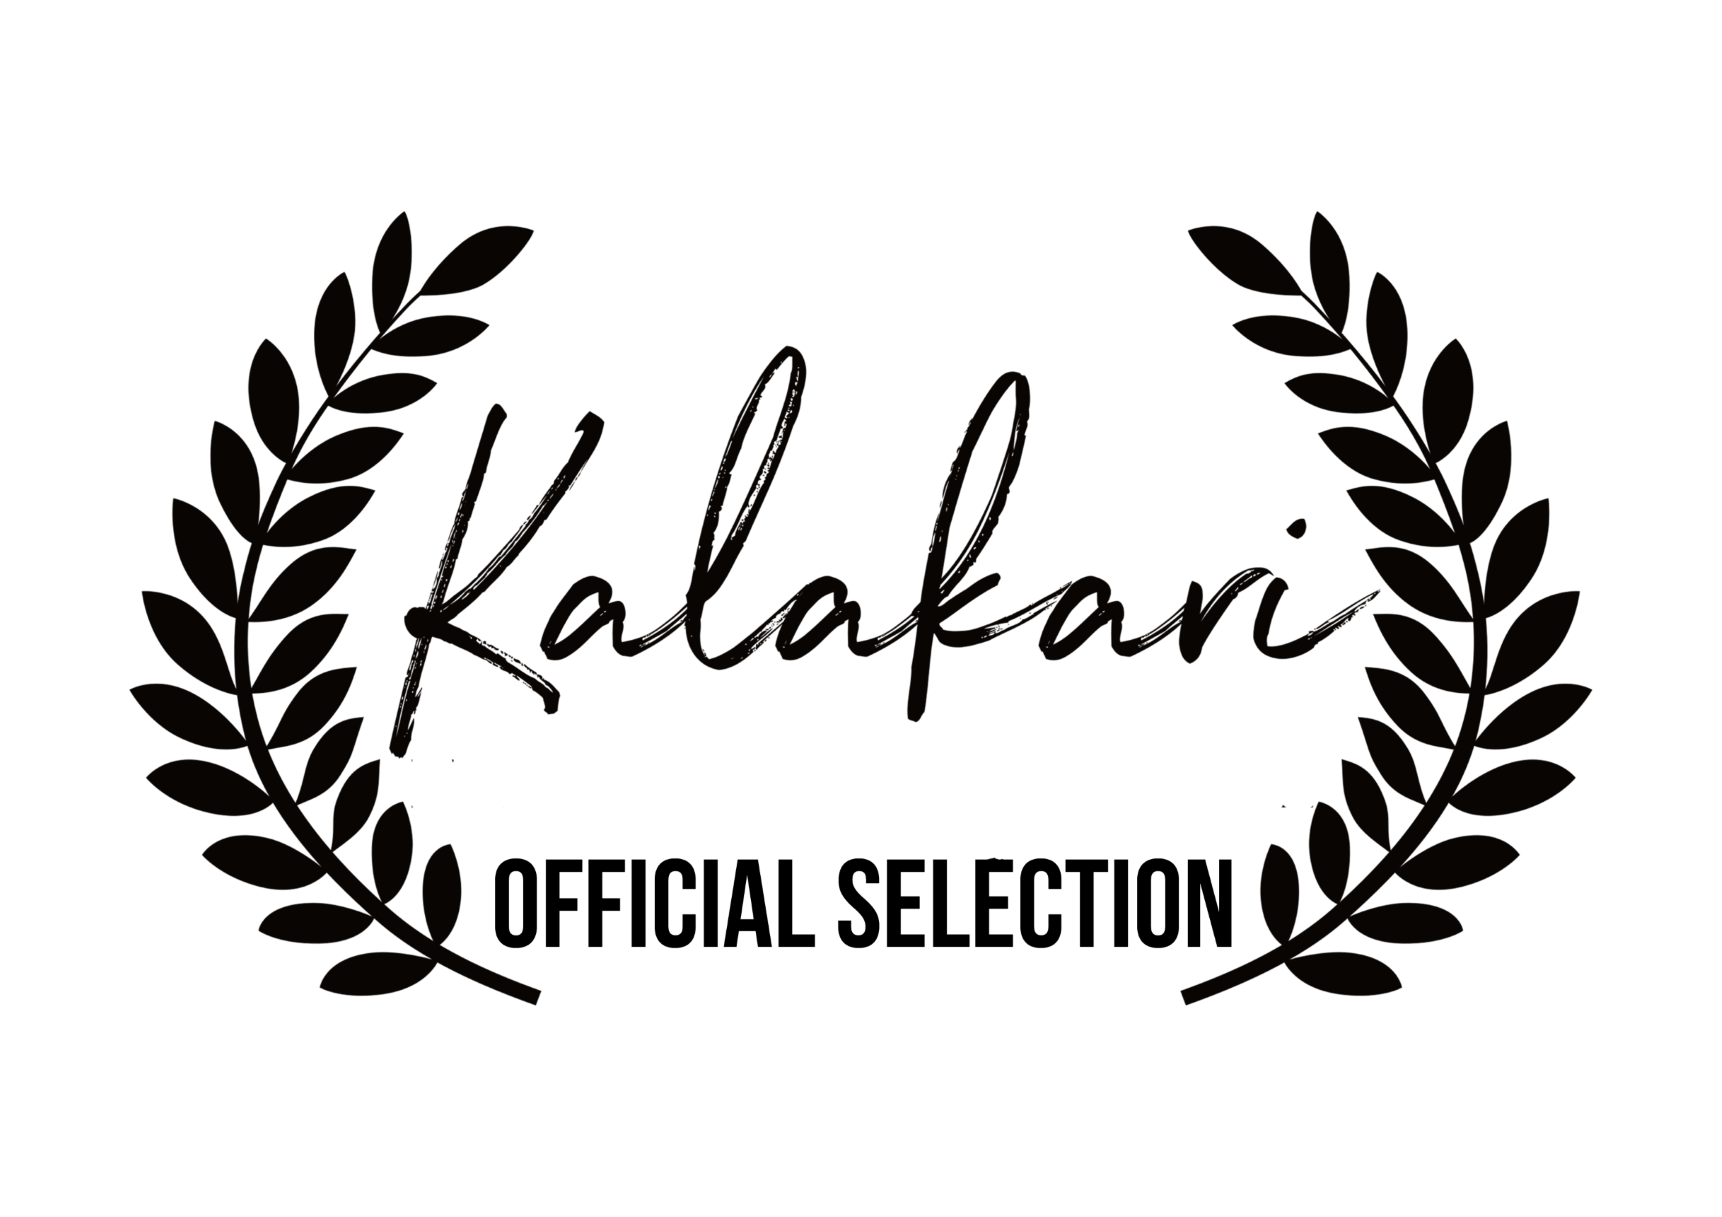 Kalakari_official_selectionEng_b_3.png